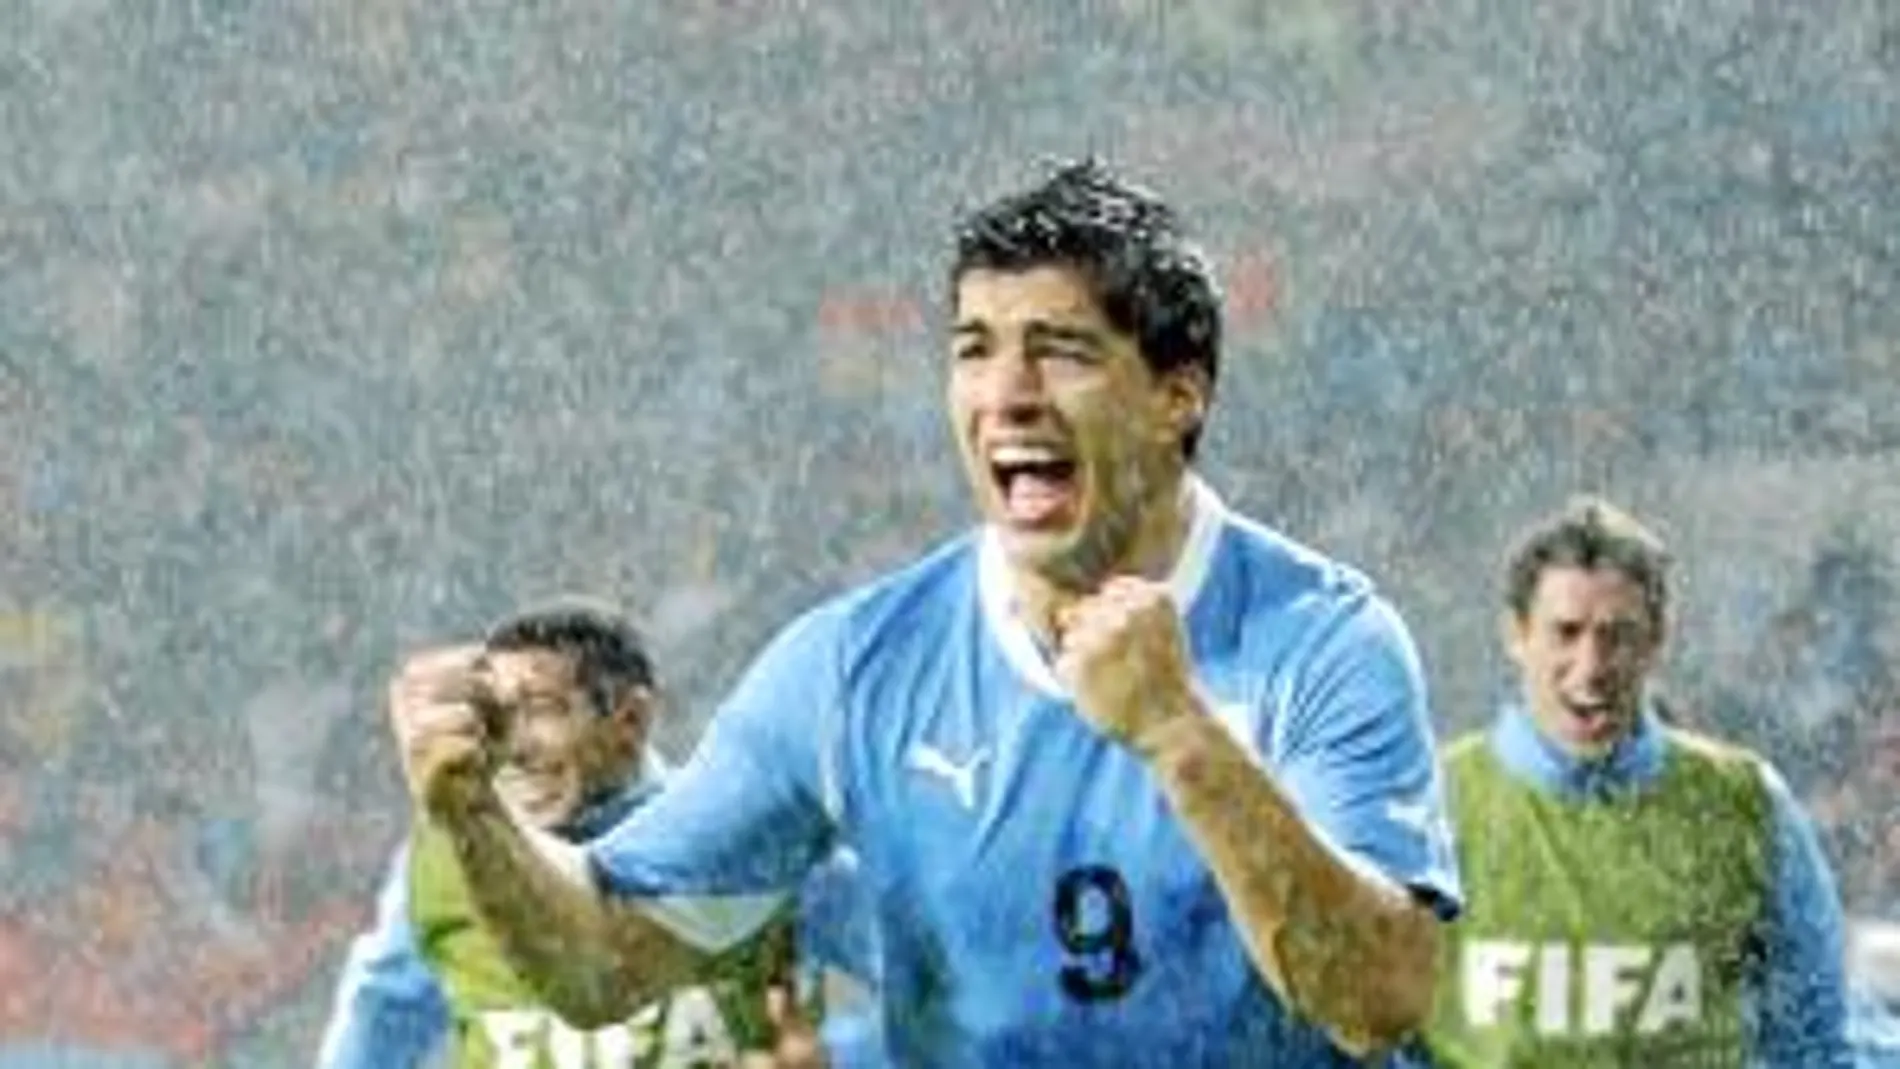 Luis Suárez, bajo la intensa lluvia, celebra eufórico el segundo gol a Corea del Sur, que permitió la clasificación de Uruguay